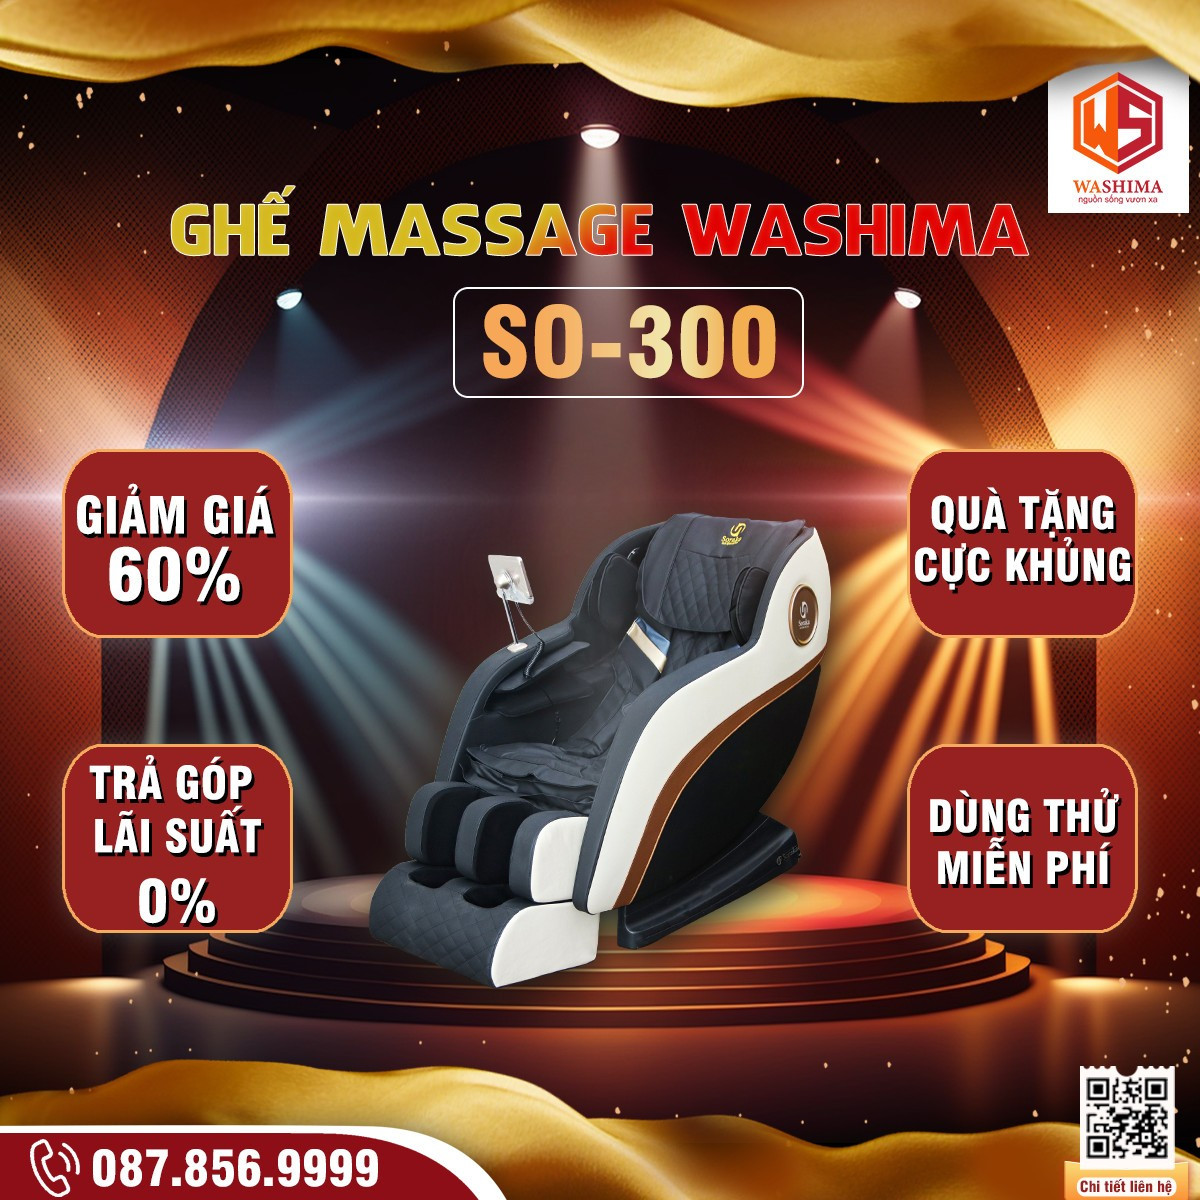 Khách hàng mua ghế massage SO-300 được giảm ngay 60% so với giá bán thực tế